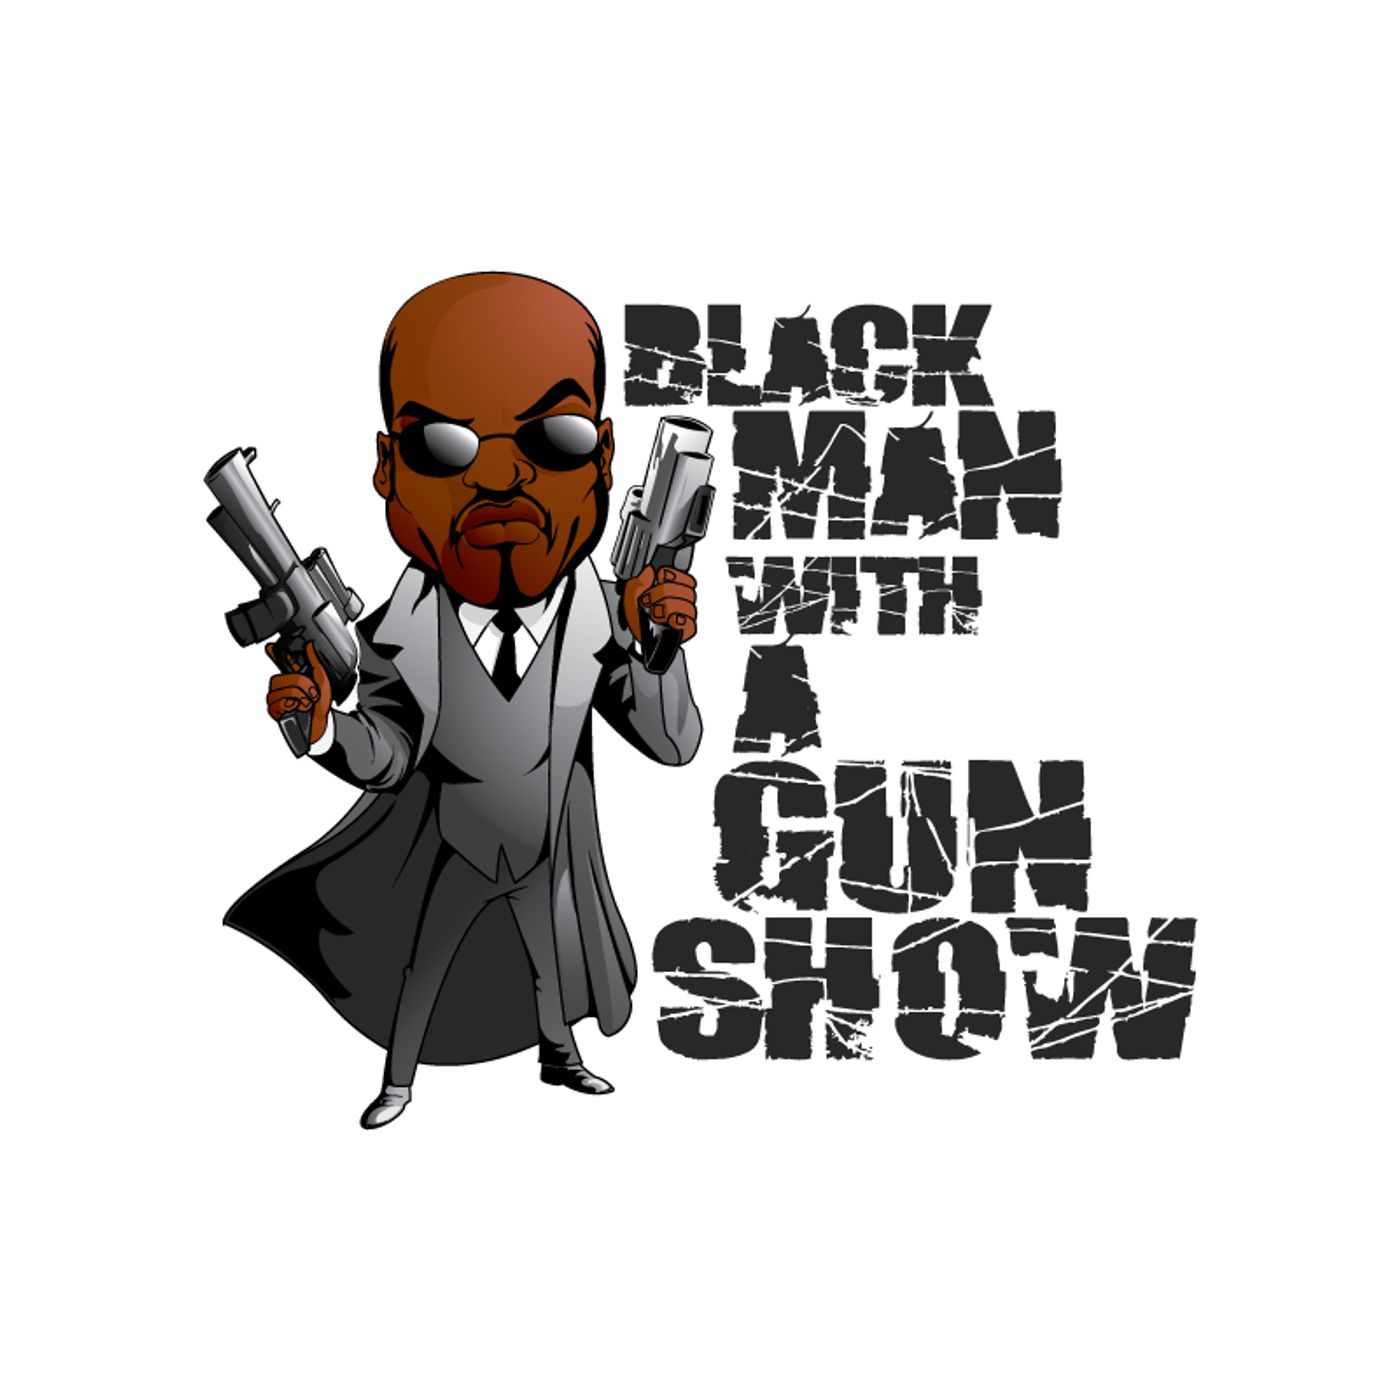 Black Man With A Gun Show